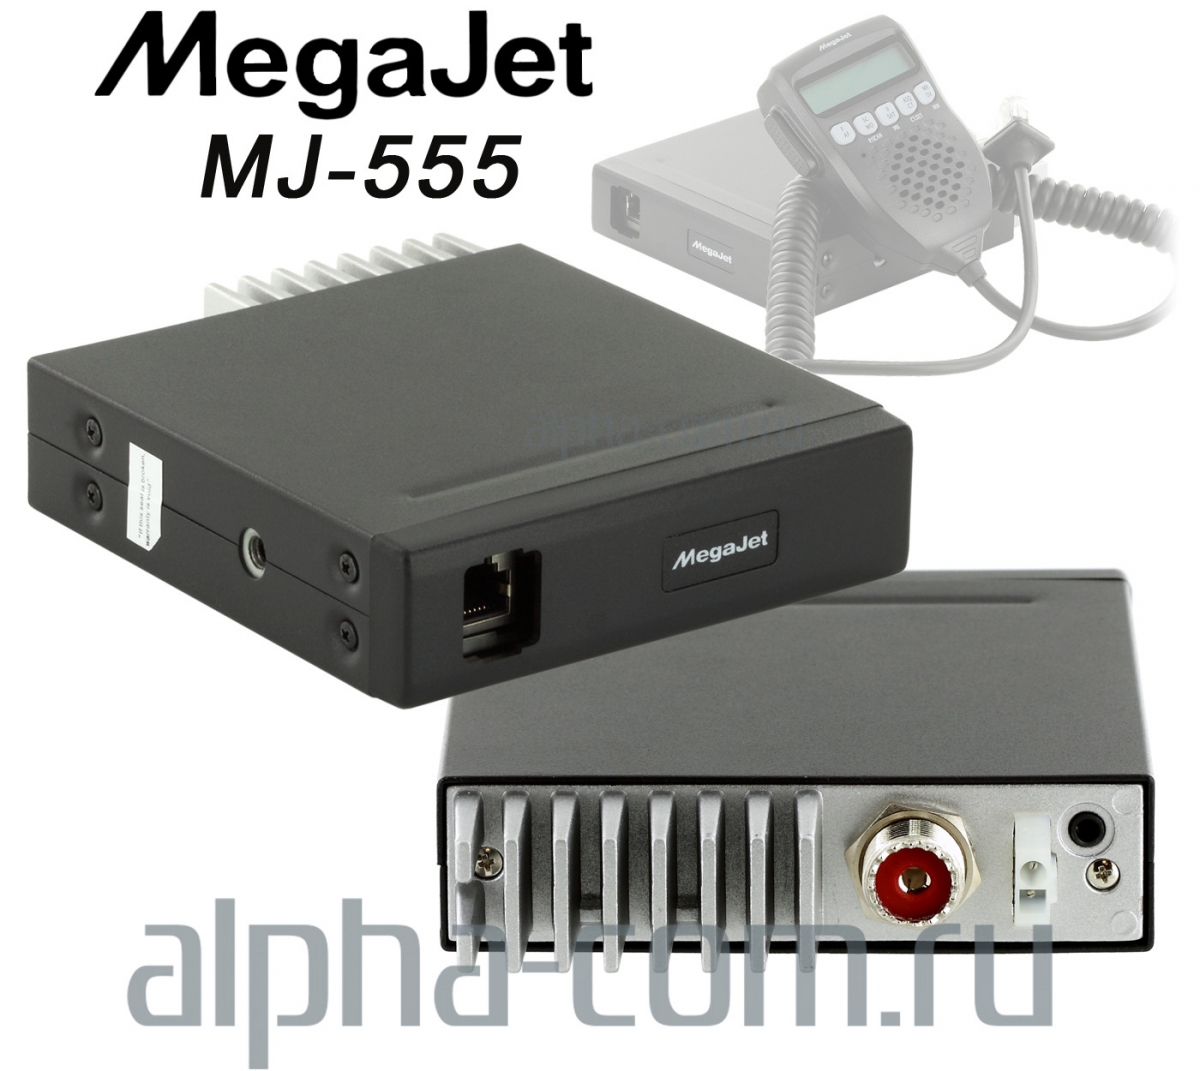 Megajet mj-555